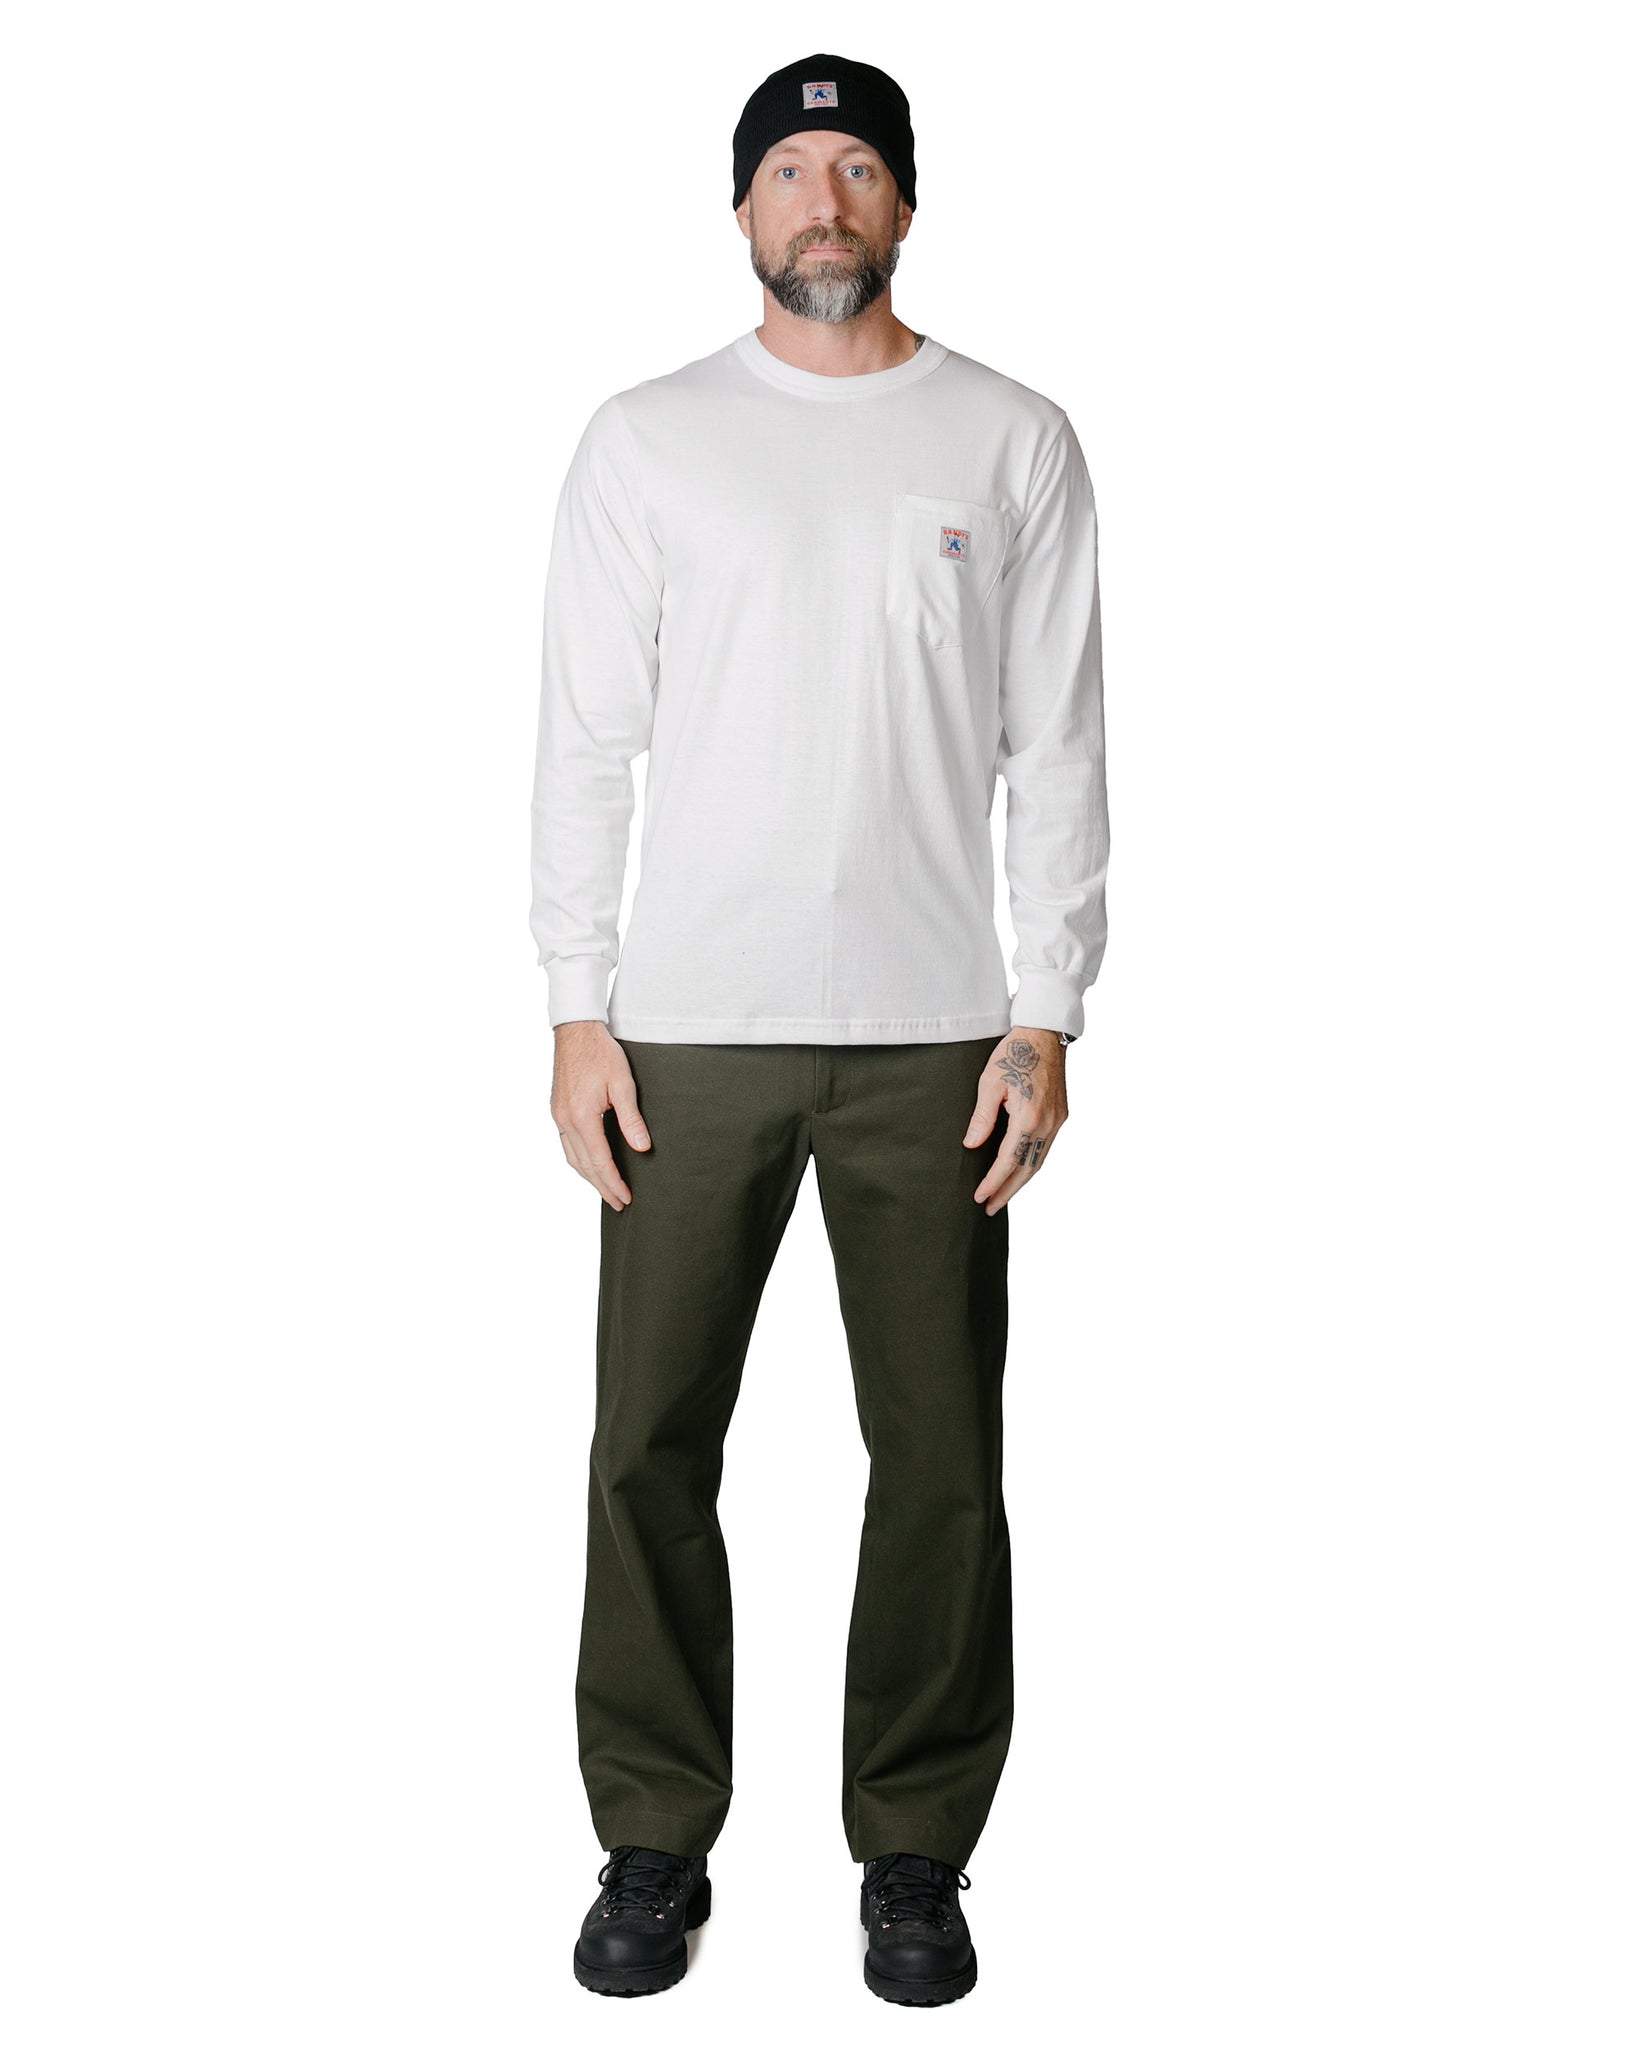 Randy's Garments Long-Sleeve Pocket Tee White model full